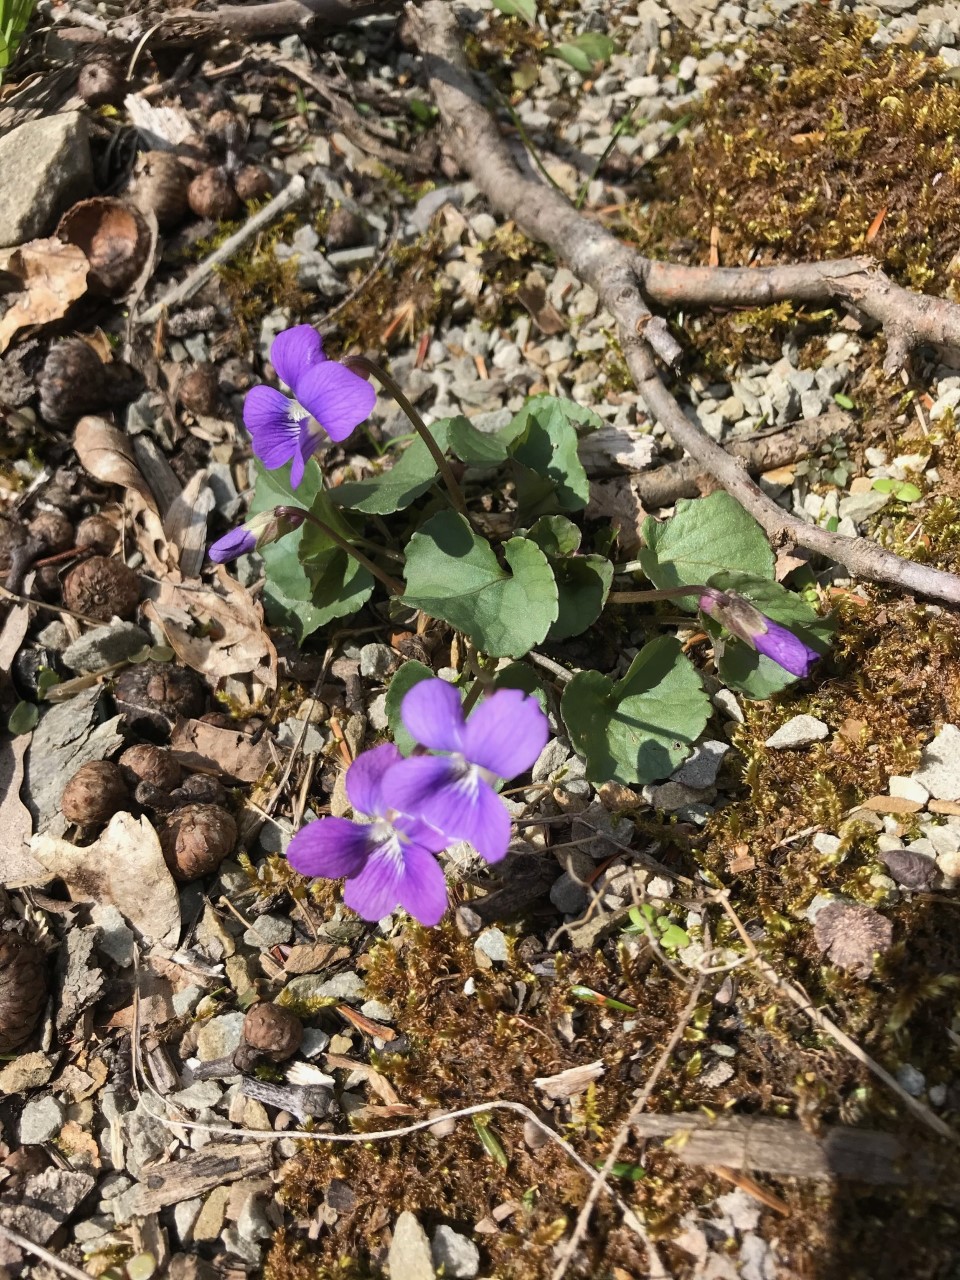 Common Violets